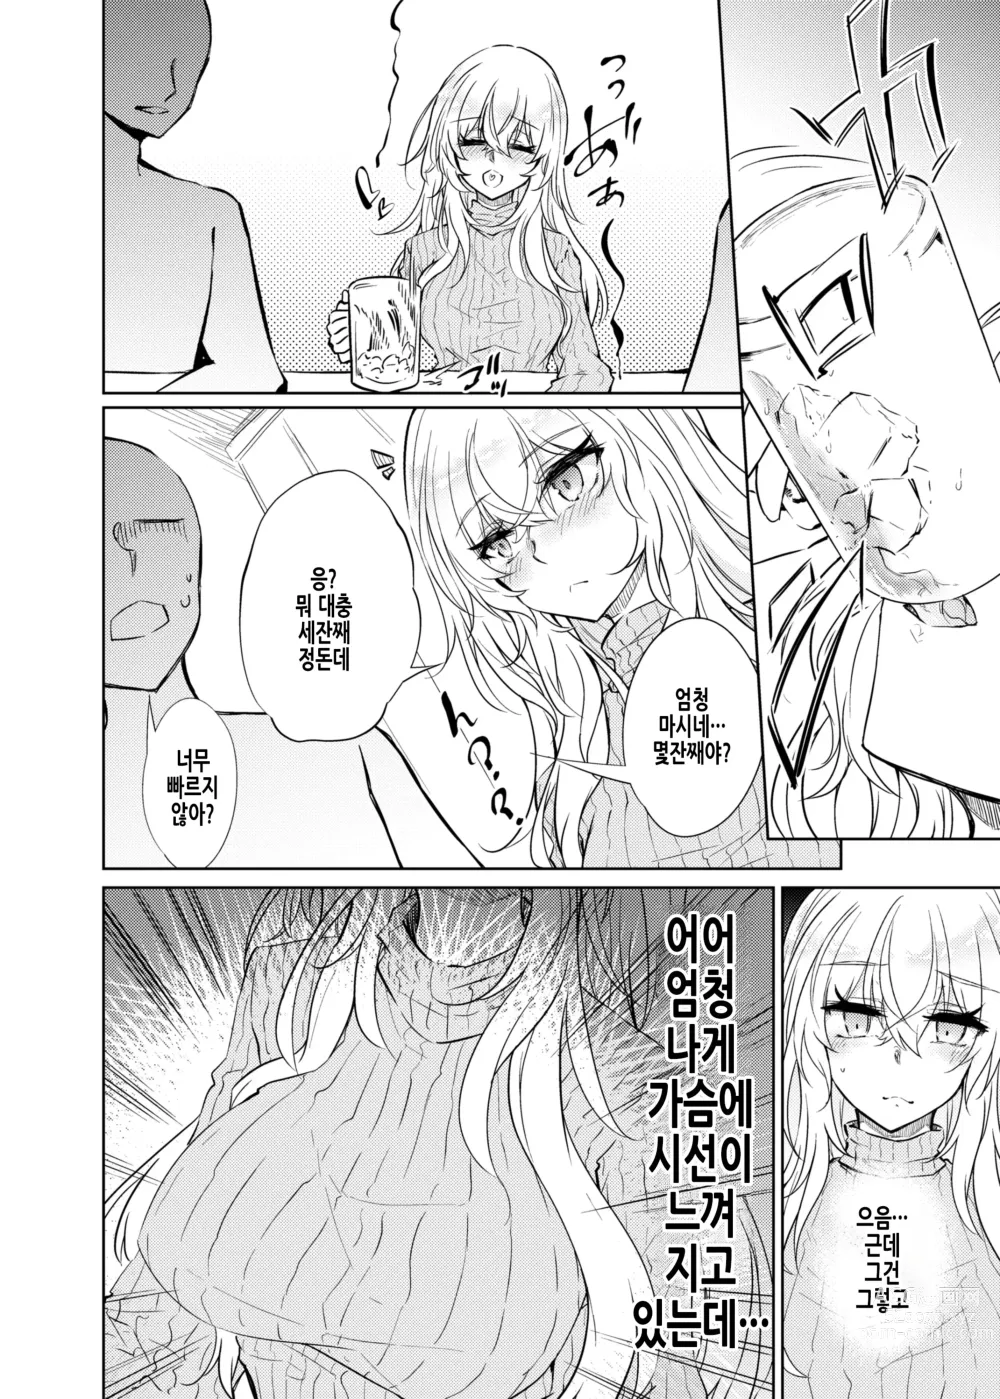 Page 14 of doujinshi VR도 리얼도 TS암컷이 되었습니다. 2